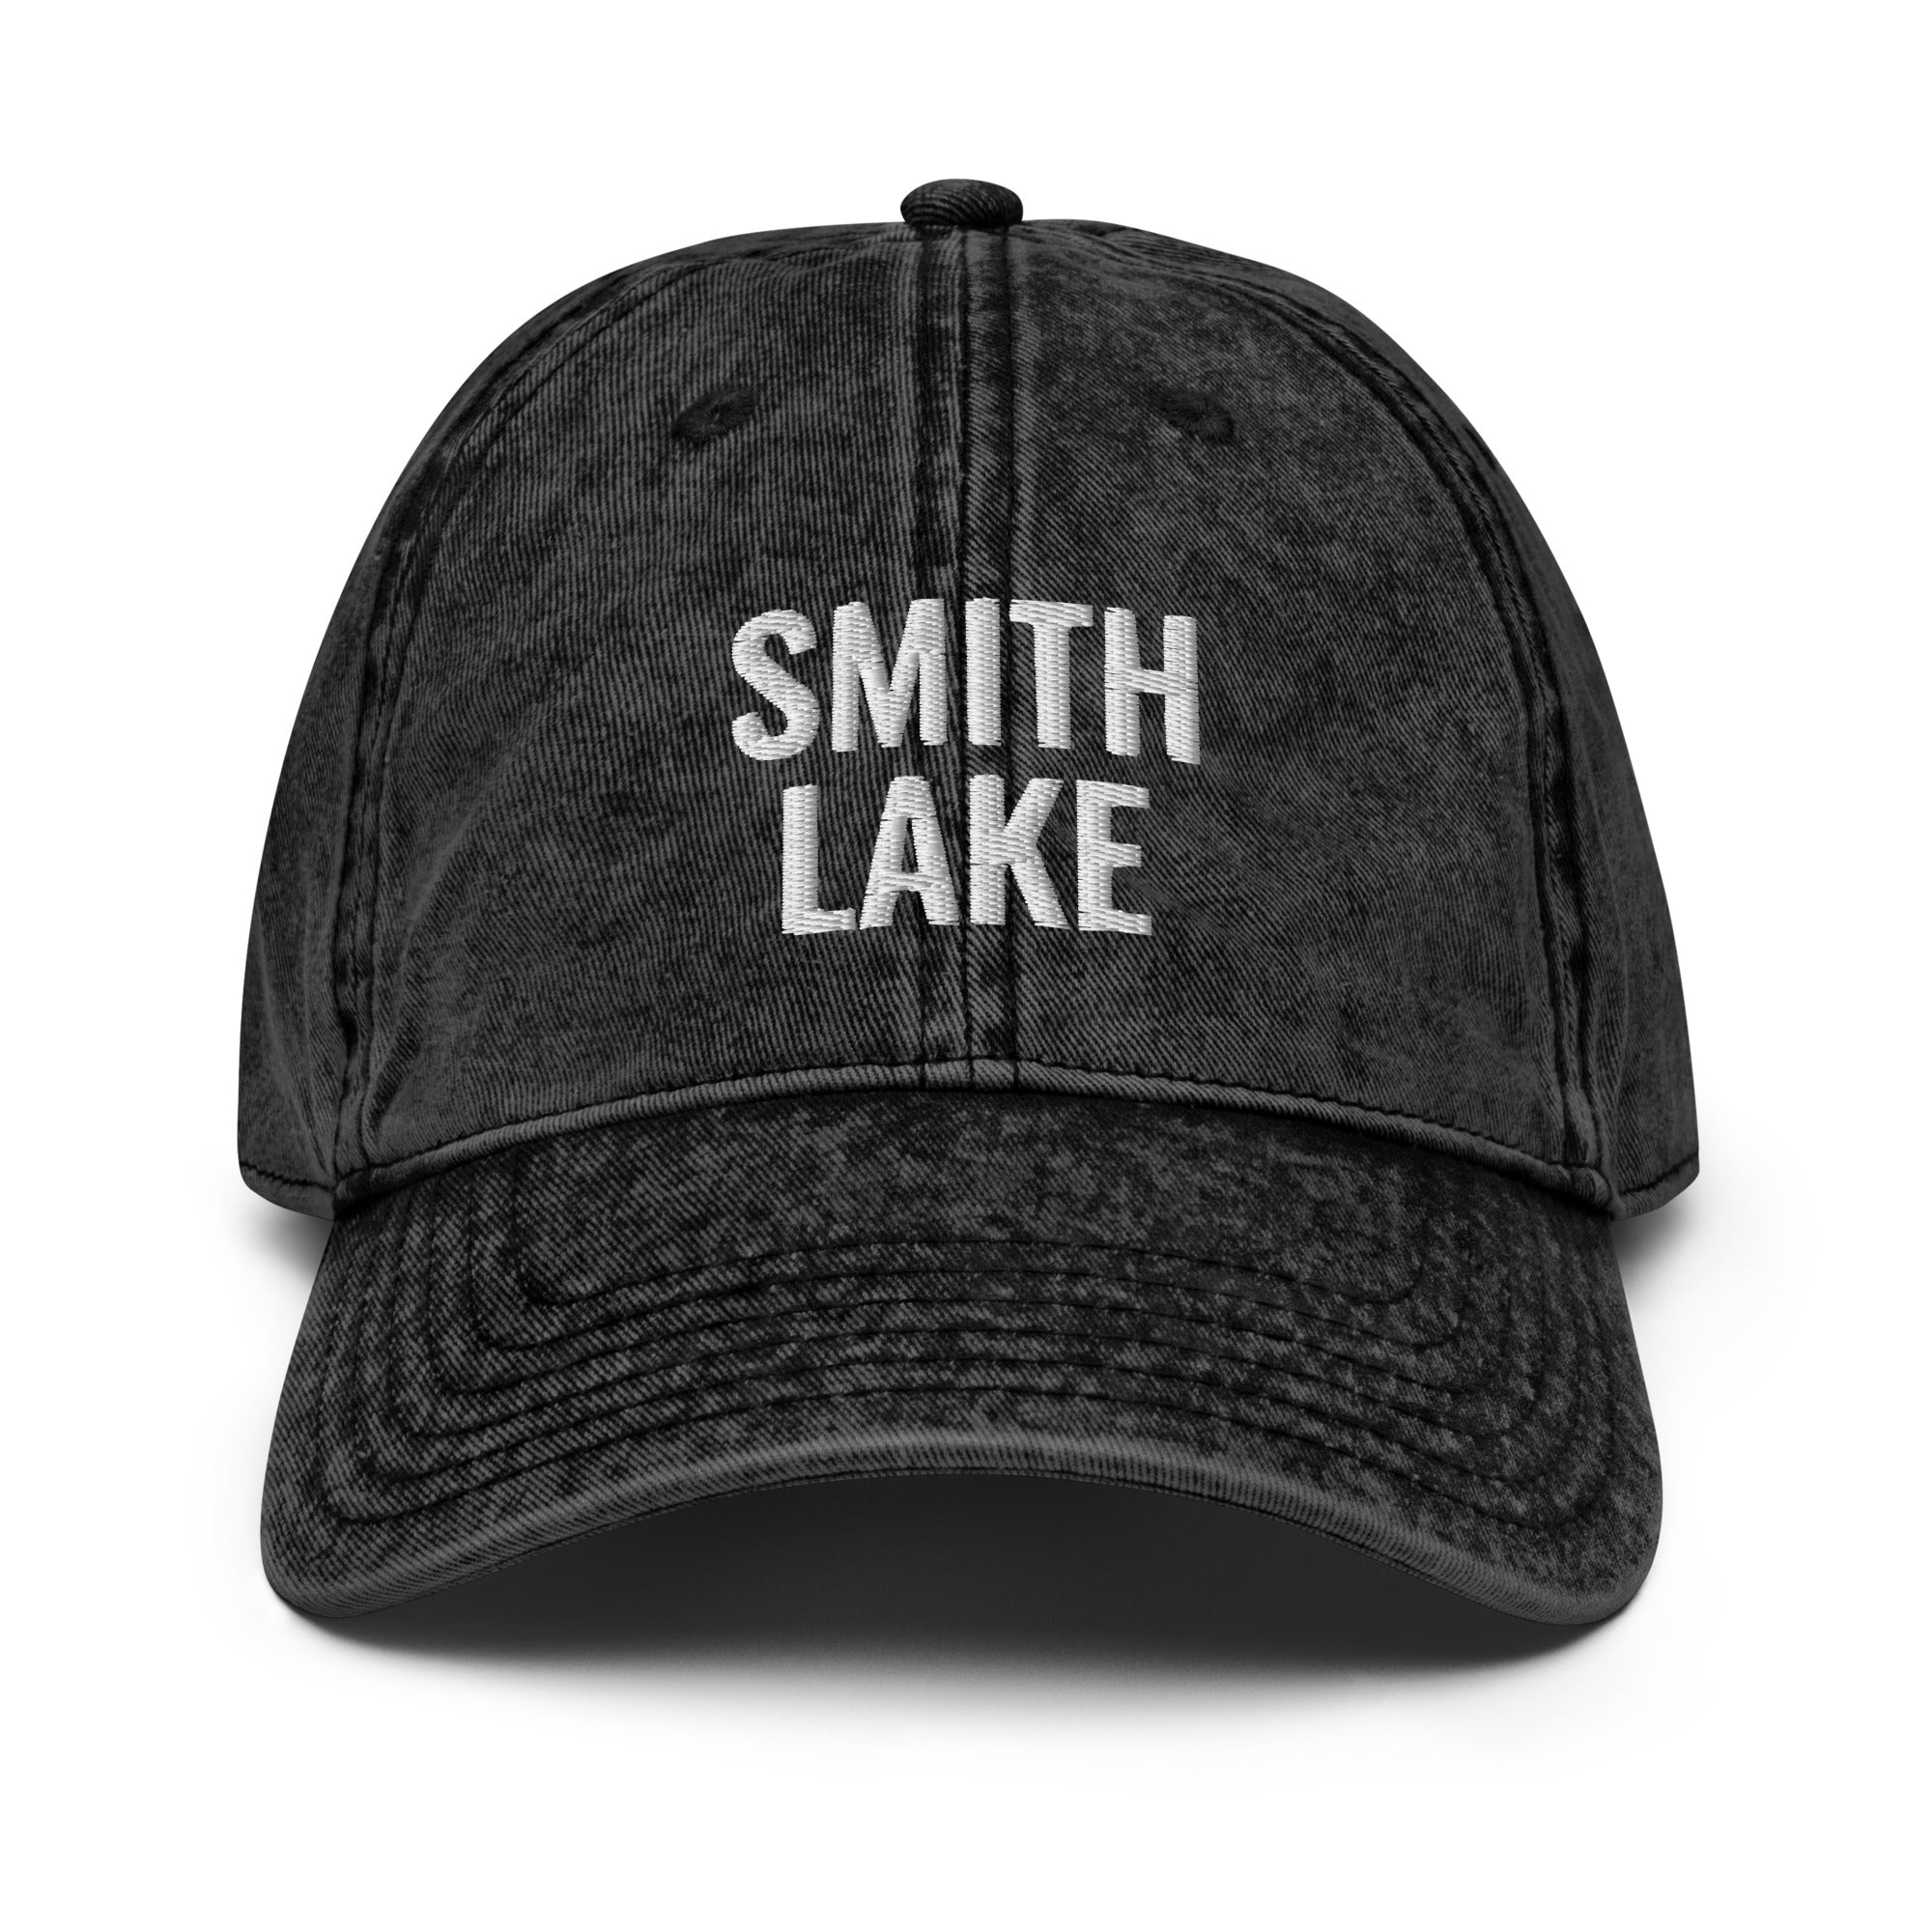 Smith Lake - Ezra's Clothing